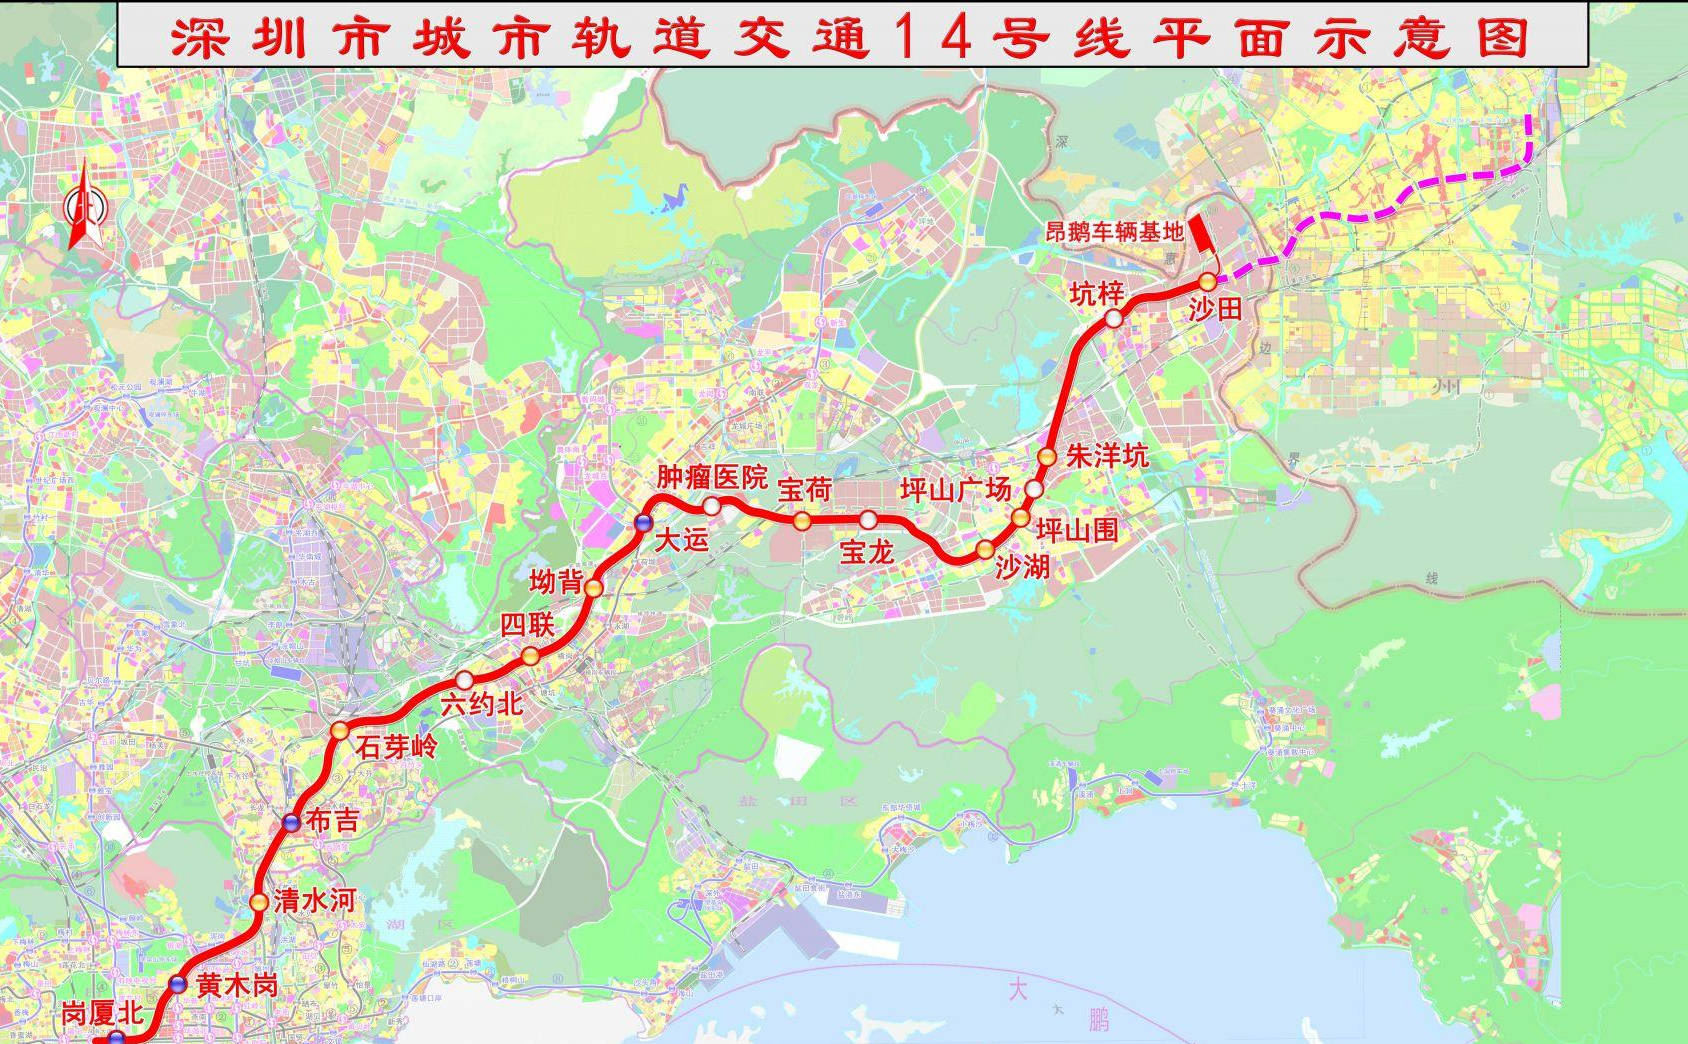 官宣:深圳地铁14号线东延伸到惠州惠阳区,纳入到轨交5